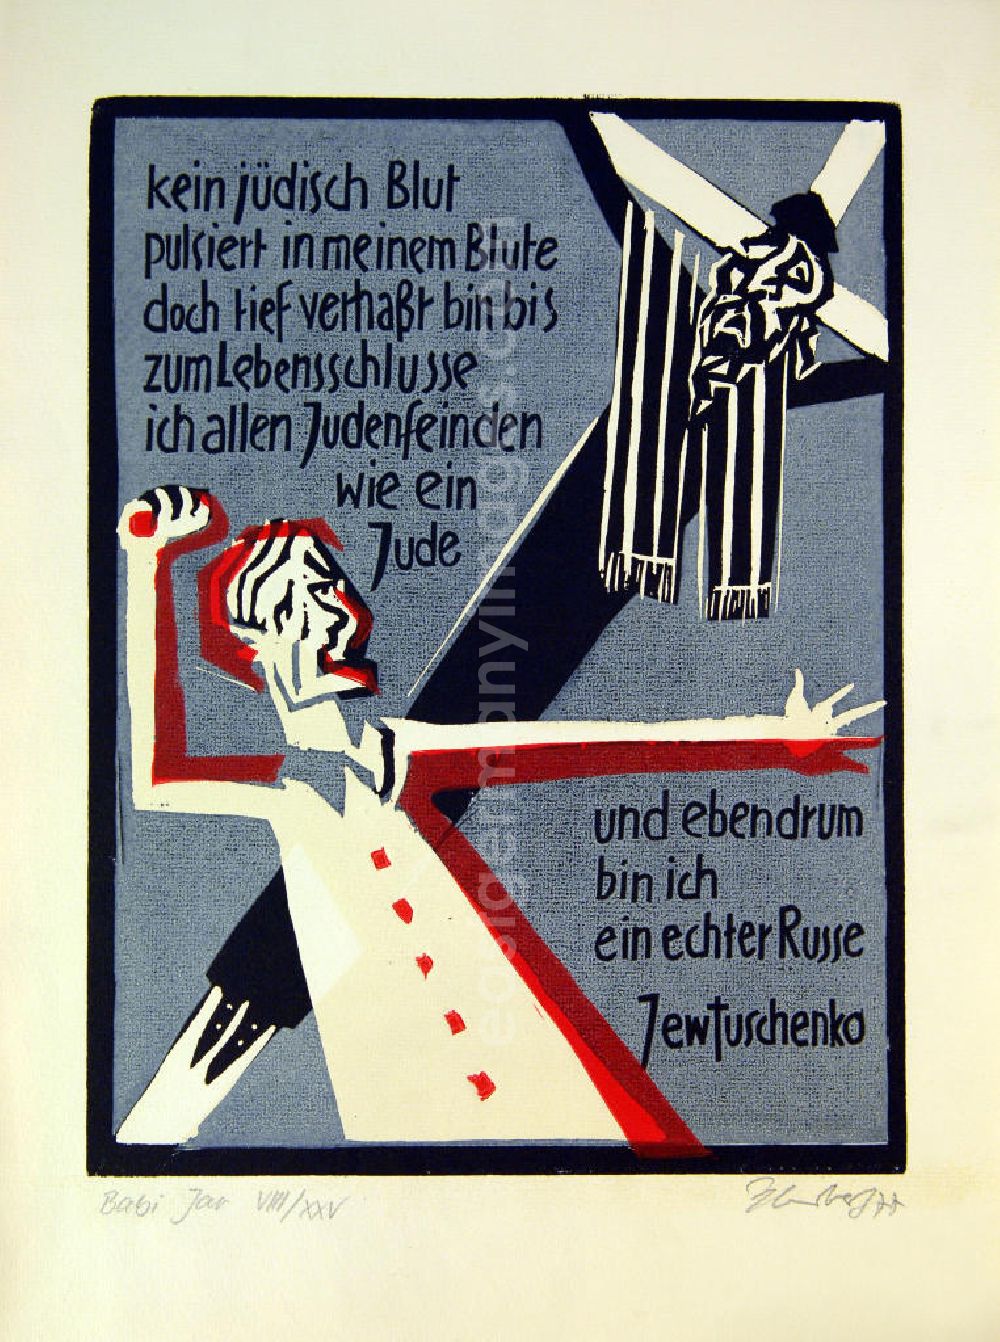 GDR photo archive: Berlin - Grafik von Herbert Sandberg Babi Jar (Jewtuschenko) aus dem Jahr 1977, 27,1x35,8cm Farbholzschnitt, handsigniert, 8/25. Im Hintergrund in der Diagonale: ein Kreuz, an dem ein Jude genagelt ist, er trägt einen gestreiften Gebetsschal; im Vordergrund eine Person mit roter Ummalung, ein Russe in kämperischer Haltung, seine rechte Faust nach oben gestreckt, Bildschrift: Kein jüdisches Blut pulsiert in meinem Blute, doch tief verhaßt bin bis zum Lebensschlusse ich allen Judenfeinden wie ein Jude und ebendrum bin ich ein echter Russe. Jewtuschenko.